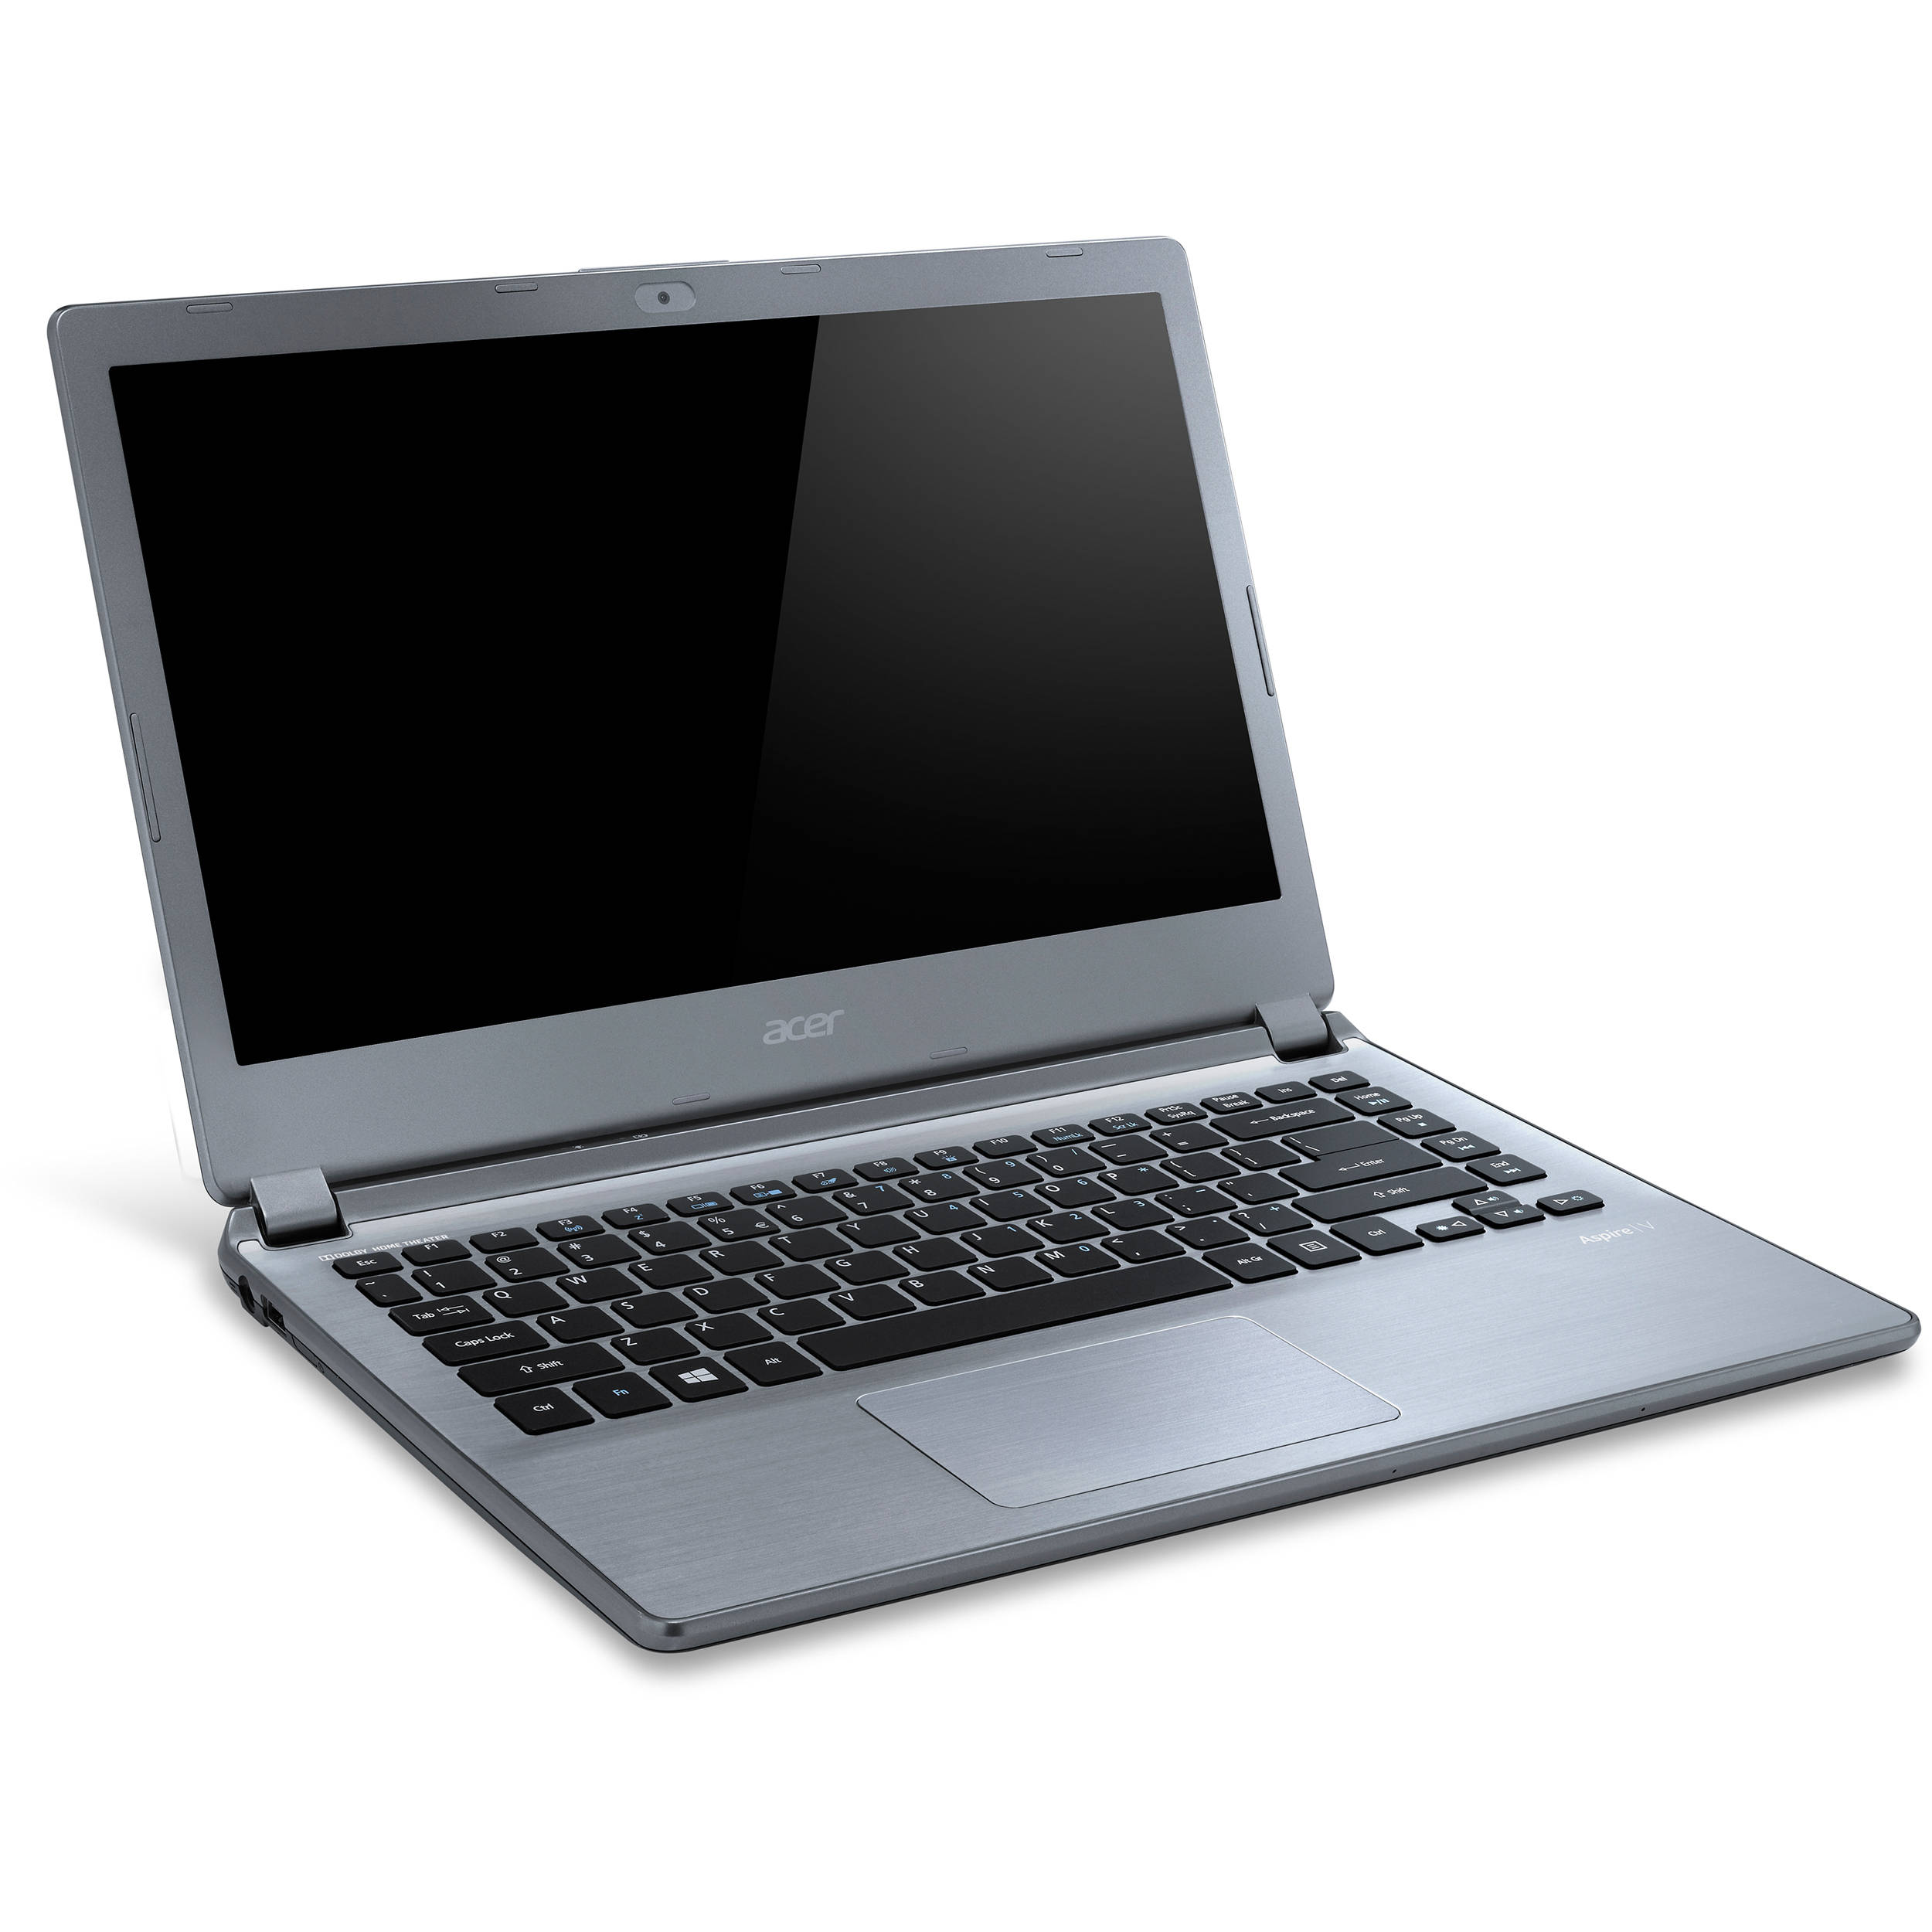 Acer Aspire V7-482PG Notebook